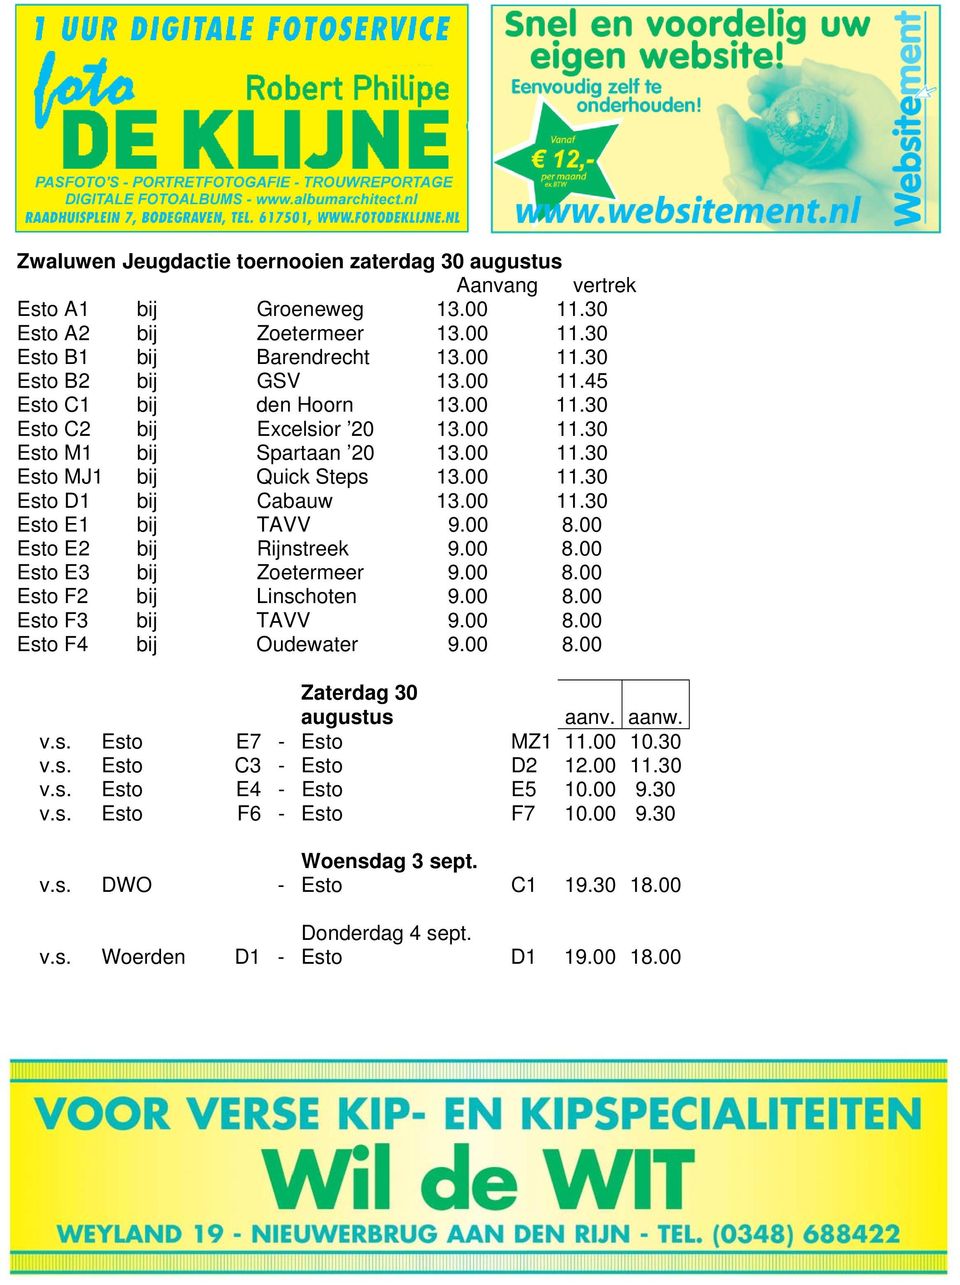 00 Esto E2 bij Rijnstreek 9.00 8.00 Esto E3 bij Zoetermeer 9.00 8.00 Esto F2 bij Linschoten 9.00 8.00 Esto F3 bij TAVV 9.00 8.00 Esto F4 bij Oudewater 9.00 8.00 Zaterdag 30 augustus aanv. aanw. v.s. Esto E7 - Esto MZ1 11.